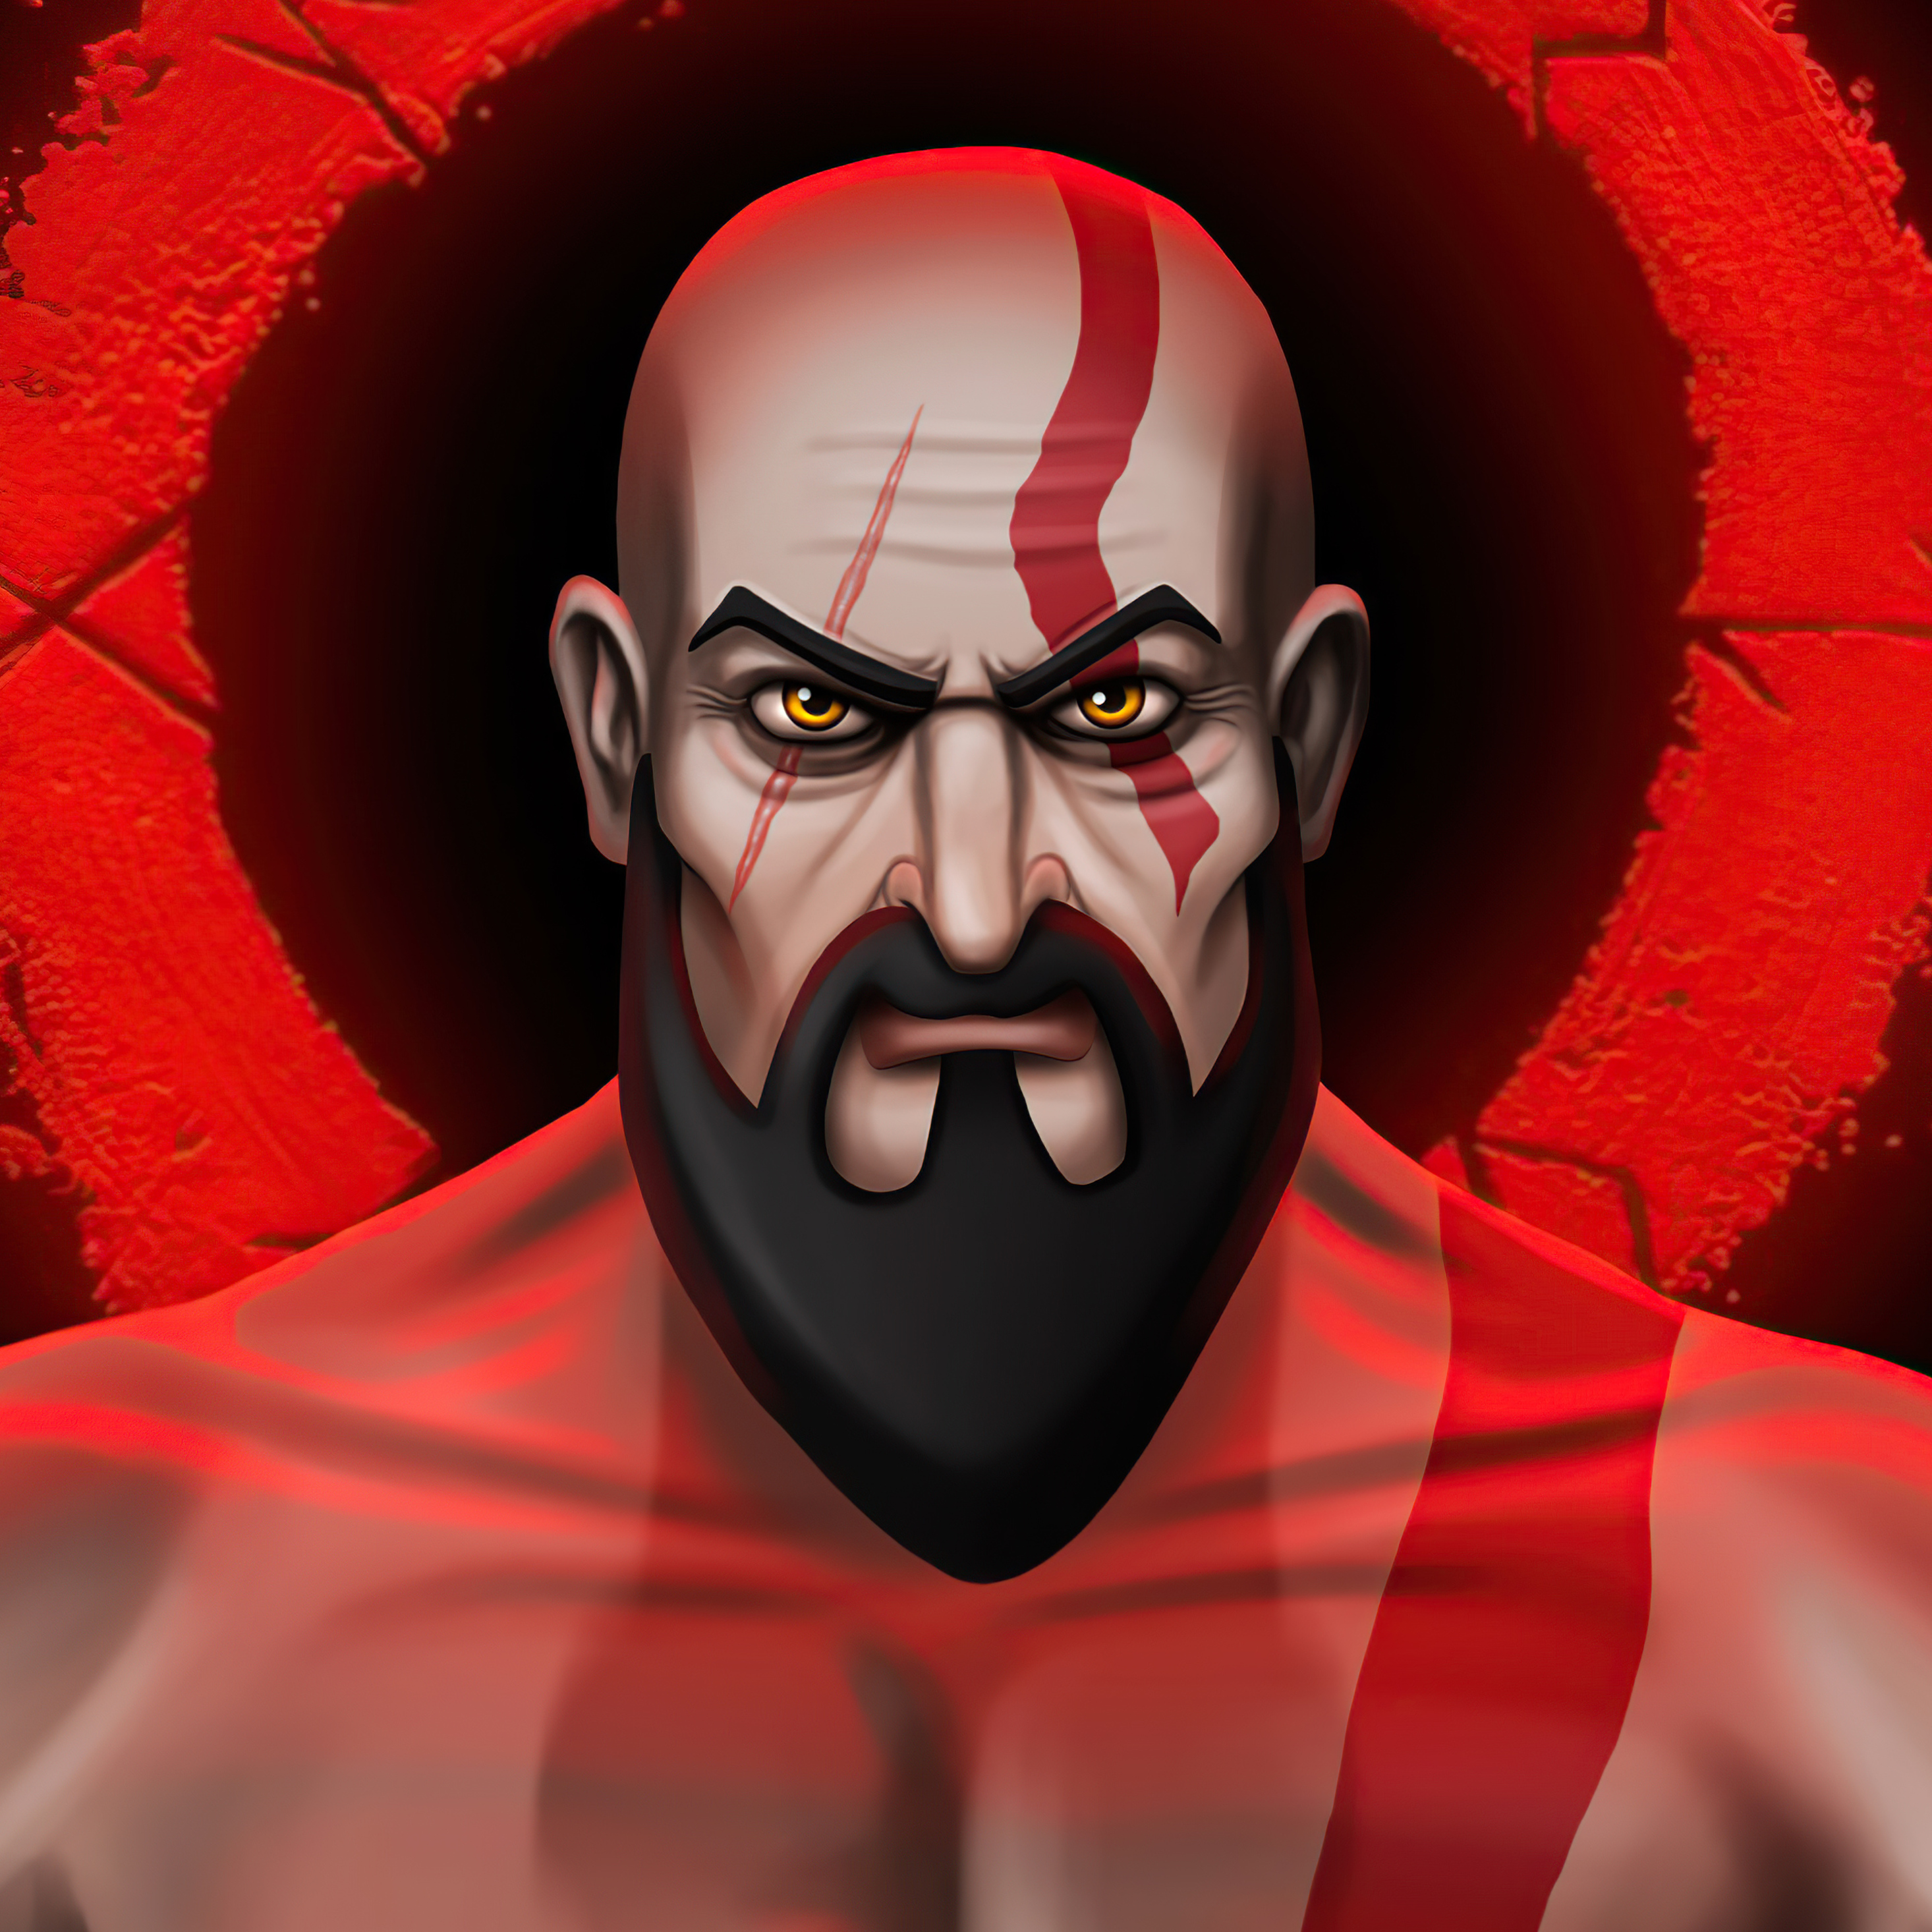 kratos-cartoon-illustration-5k-1s.jpg